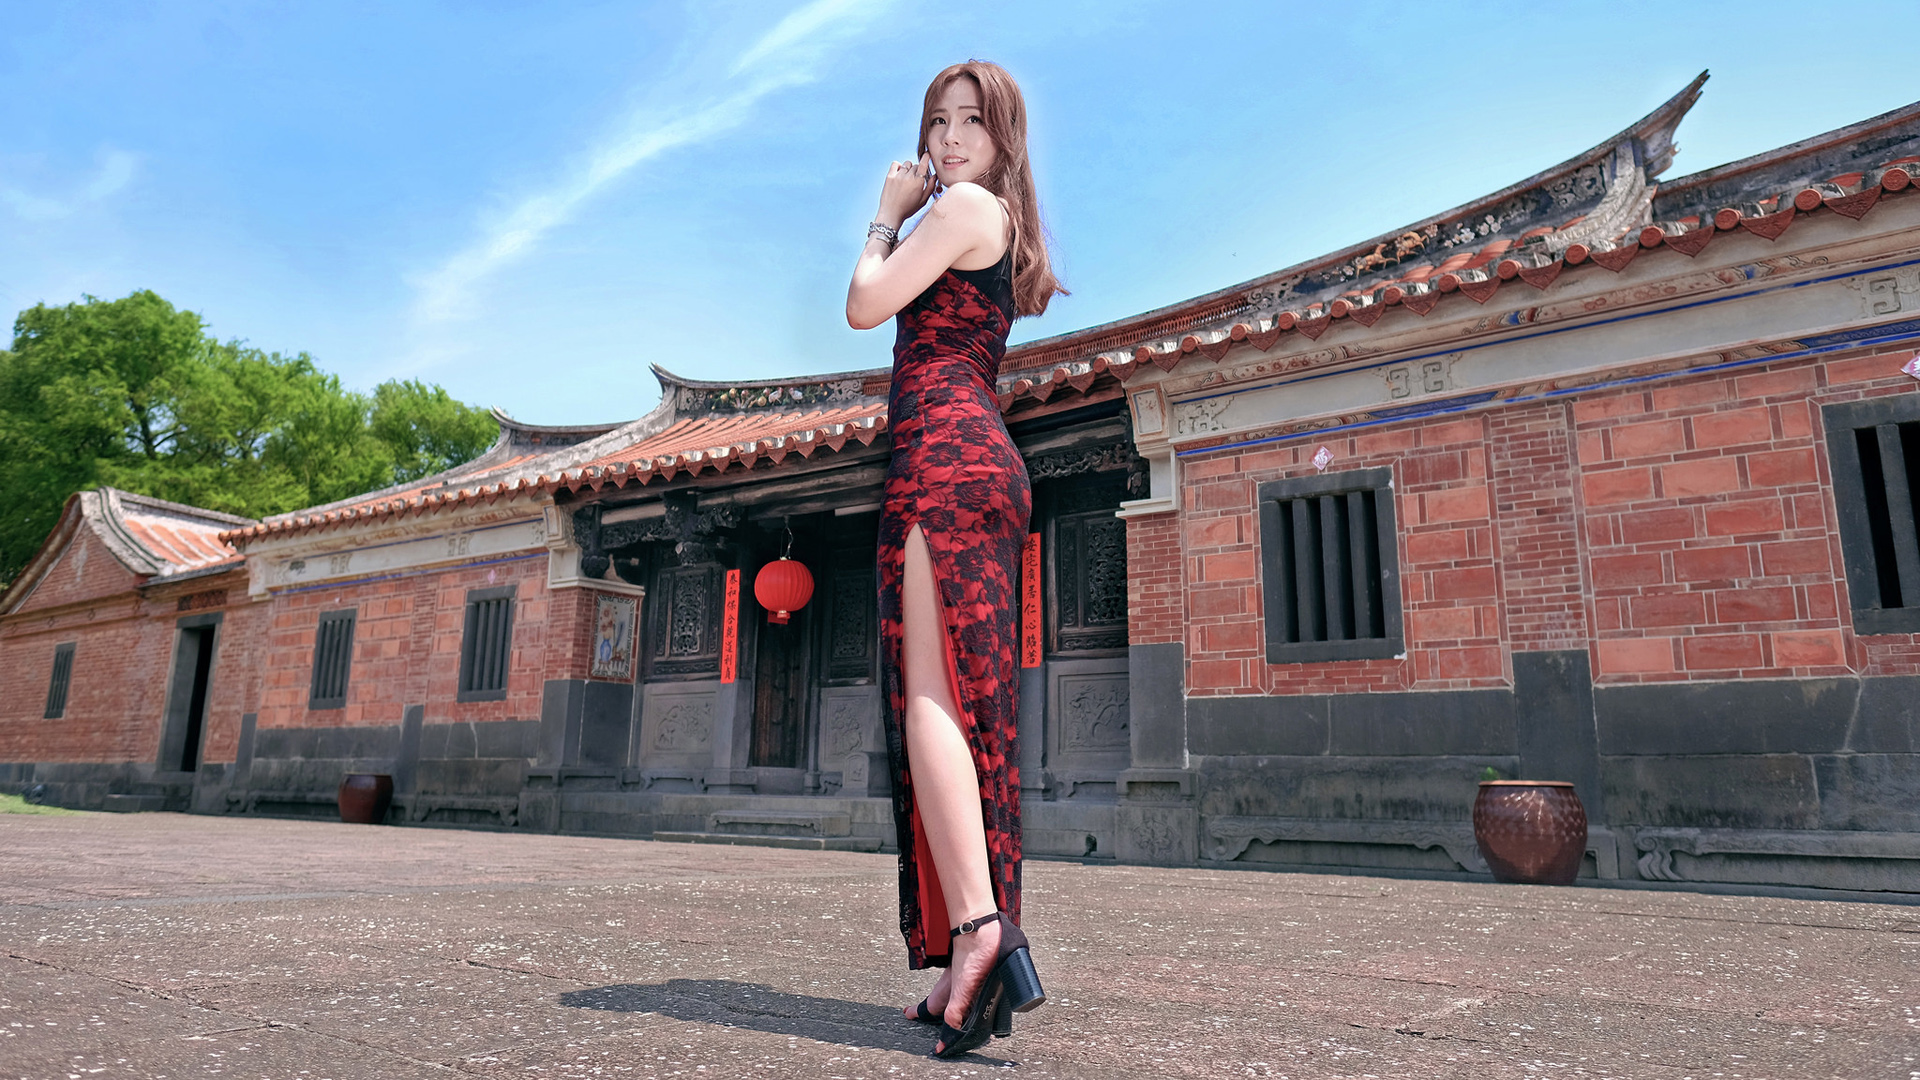 People 1920x1080 women model Asian heels feet high cut dress red dress long hair looking over shoulder women outdoors brunette